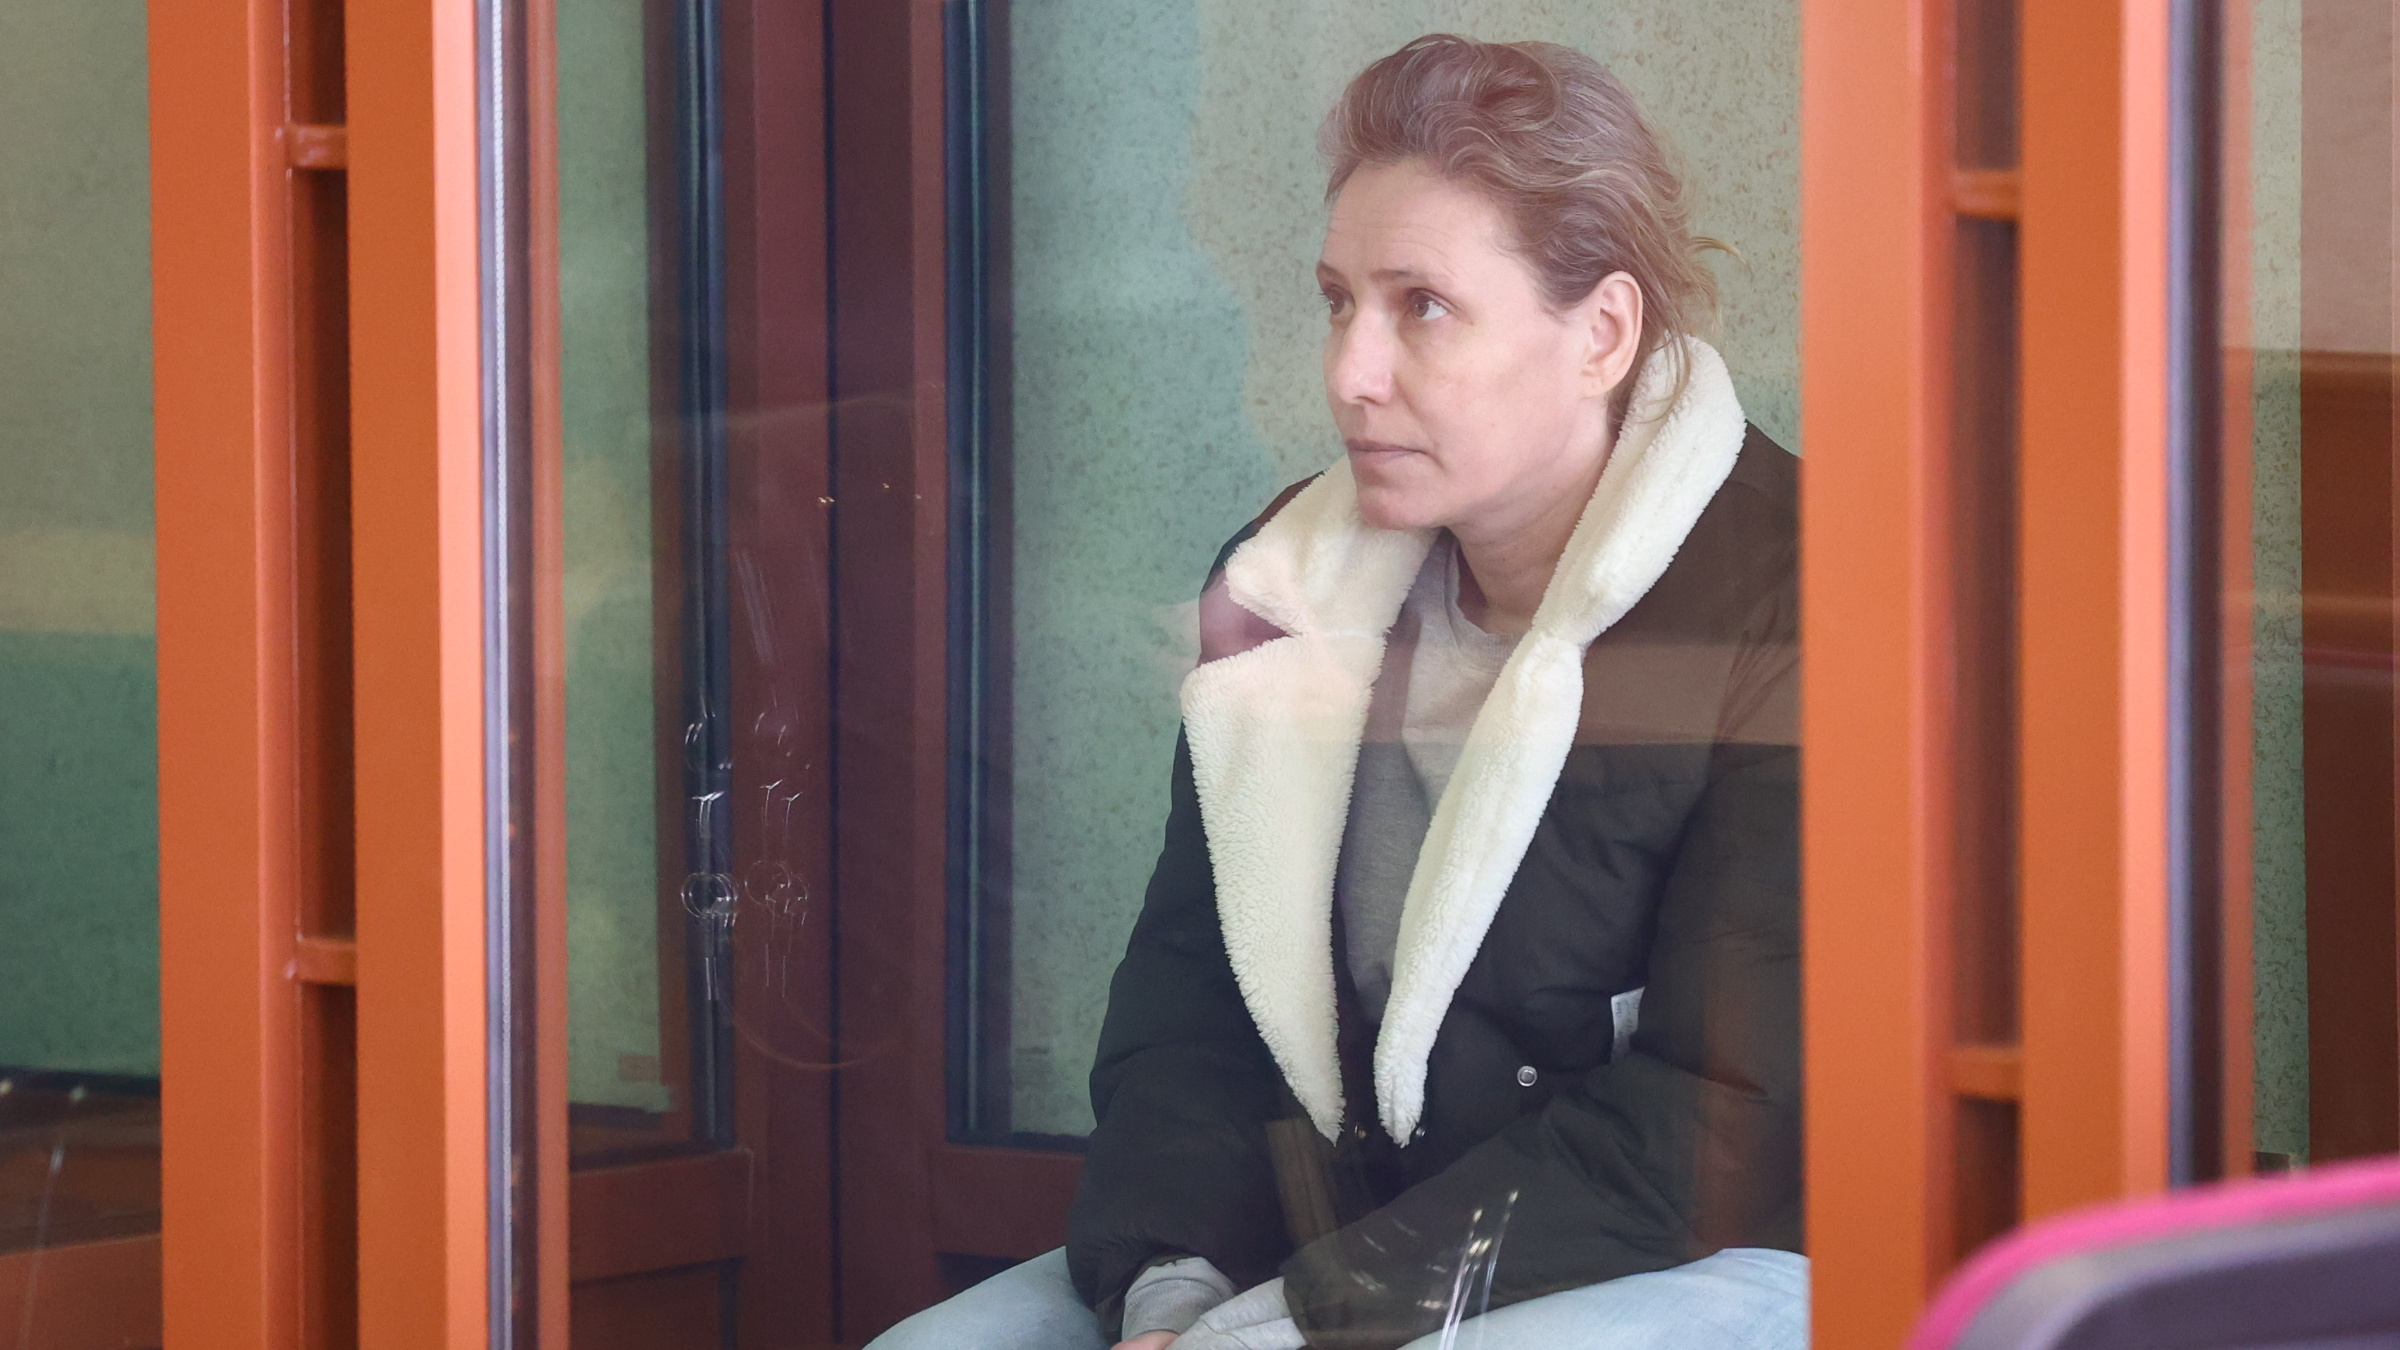 В Екатеринбурге судья дал женщине срок, близкий к максимальному. Впервые за очень долгое время